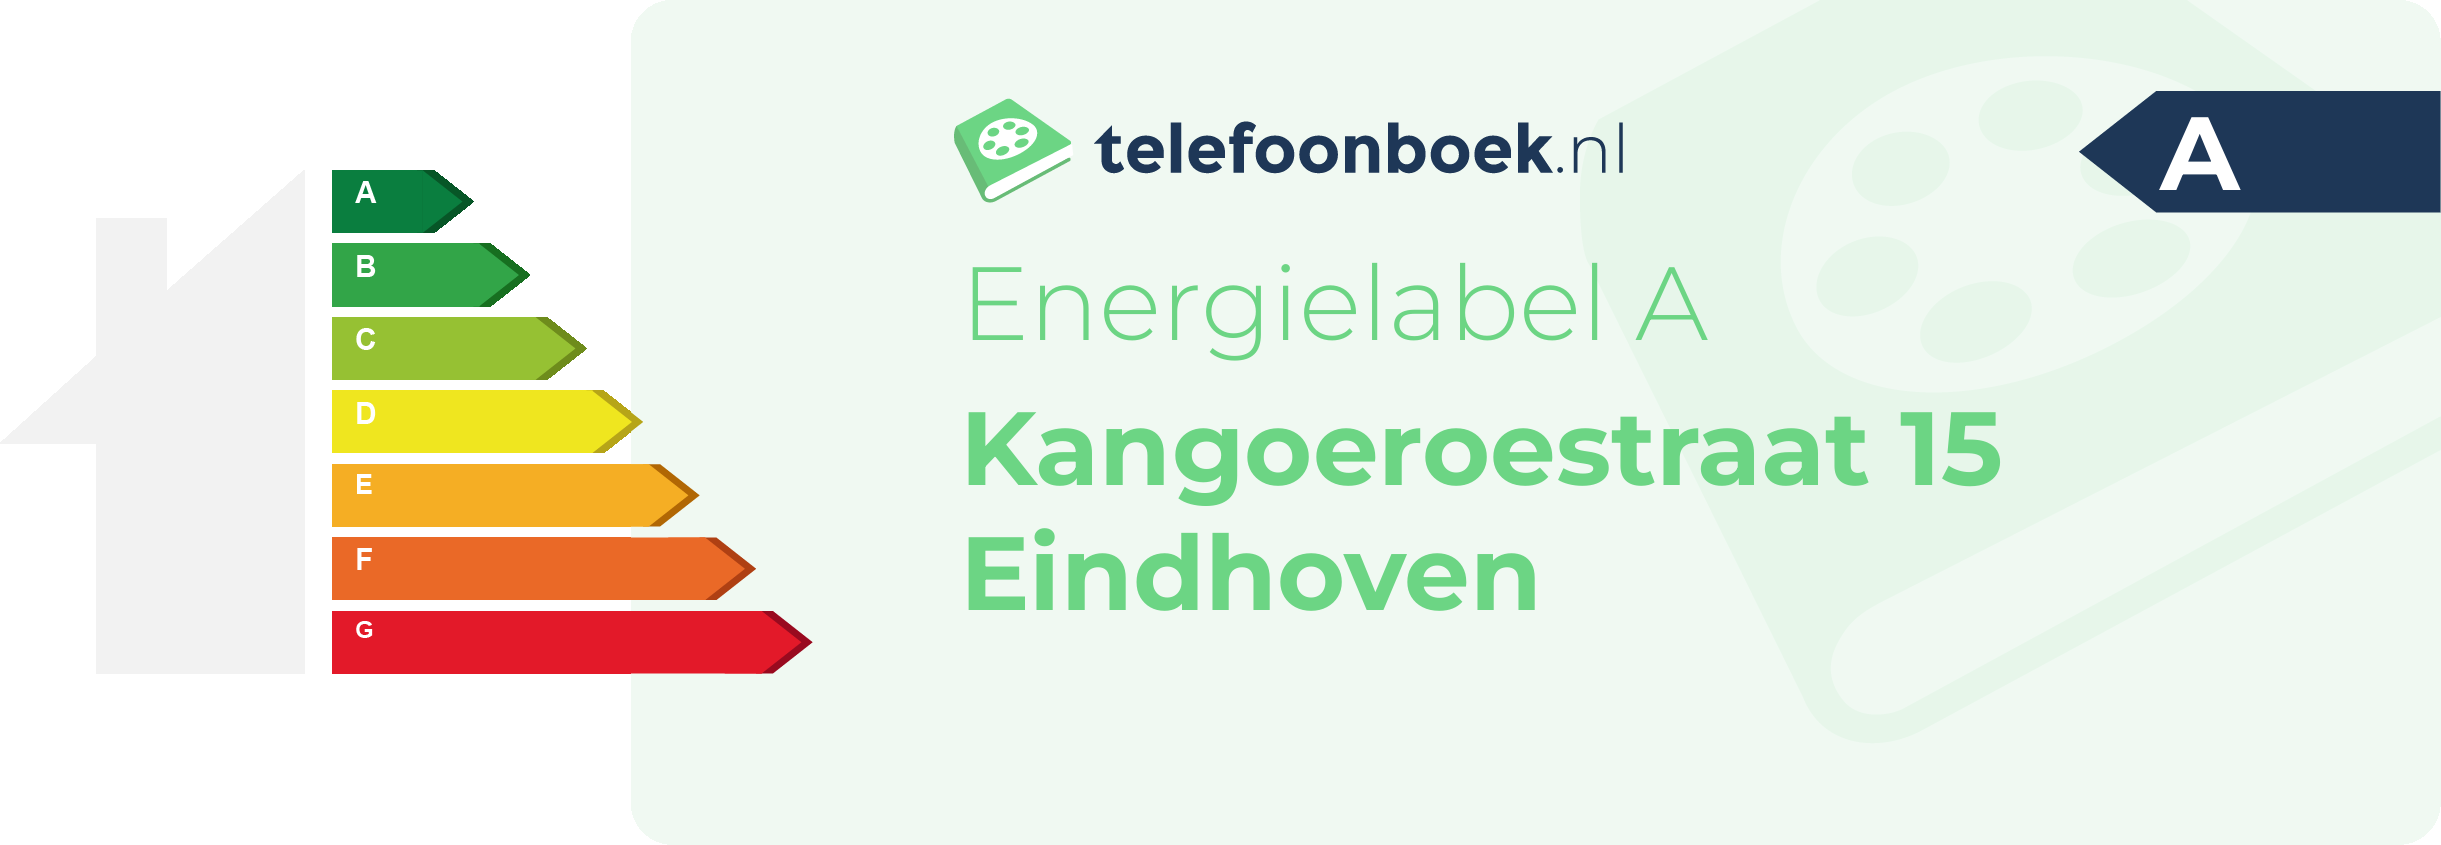 Energielabel Kangoeroestraat 15 Eindhoven